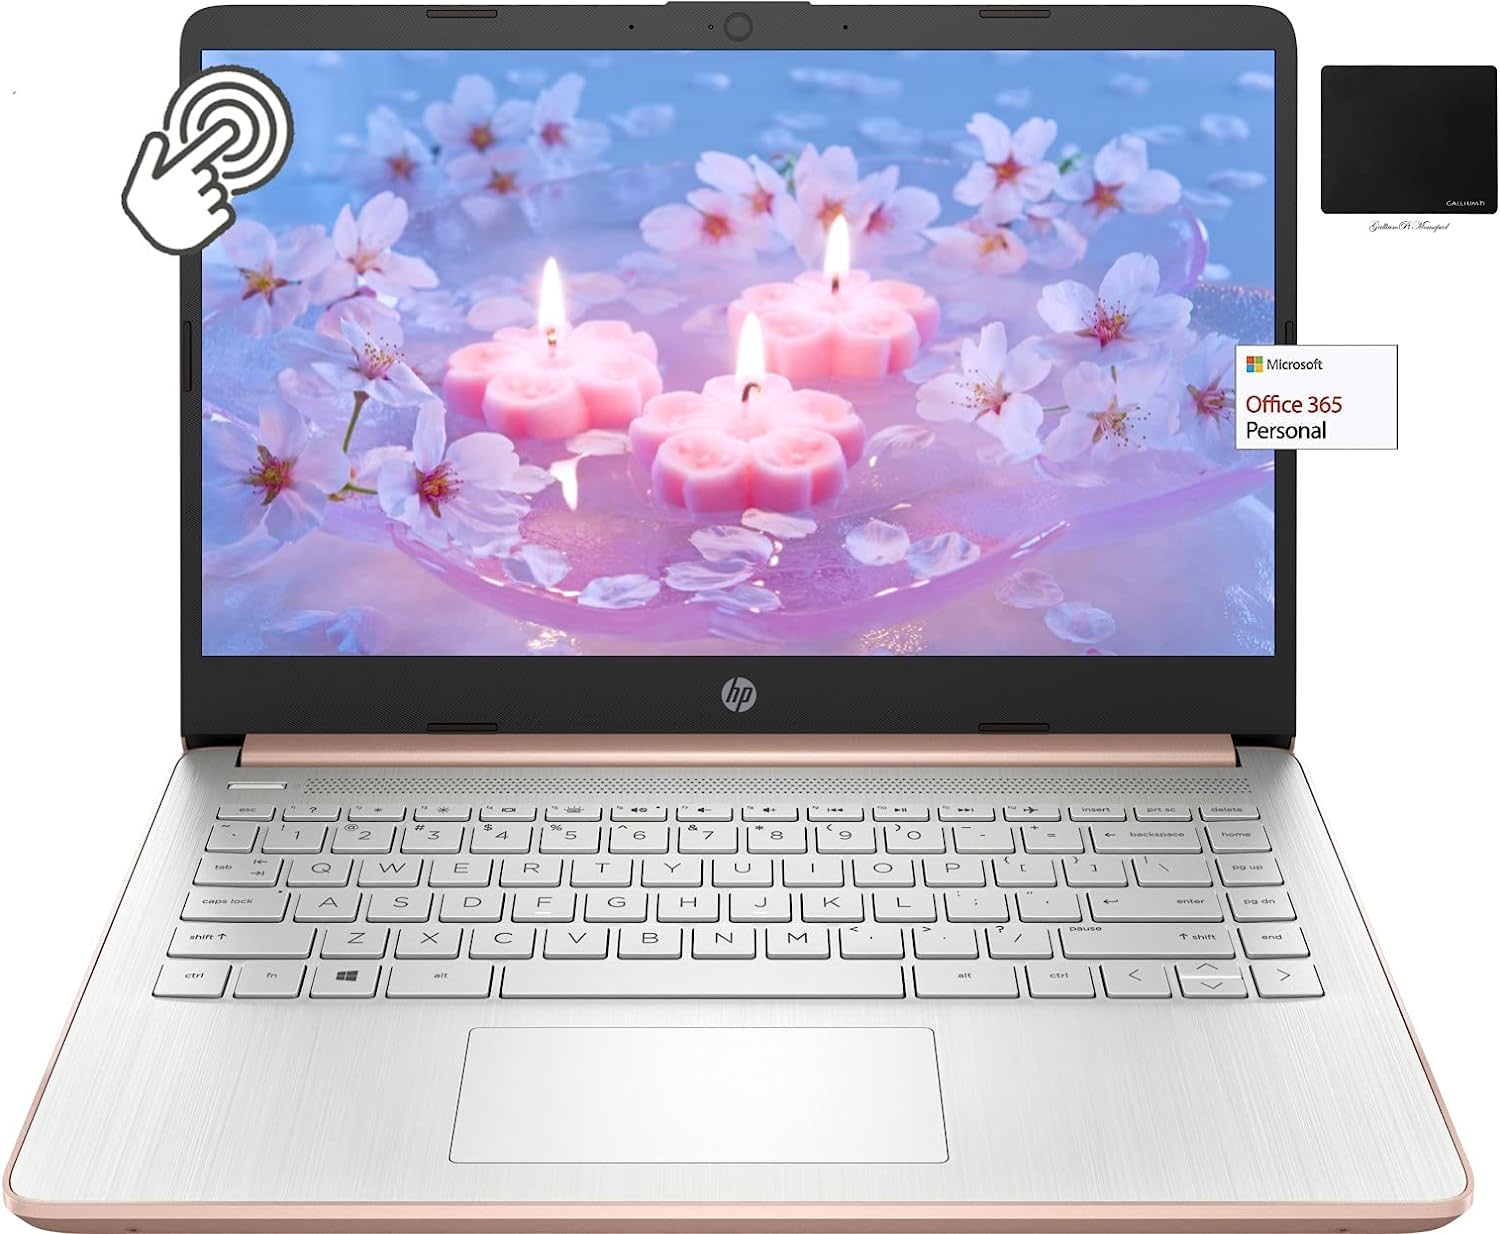 Thin Light Touchscreen Laptop